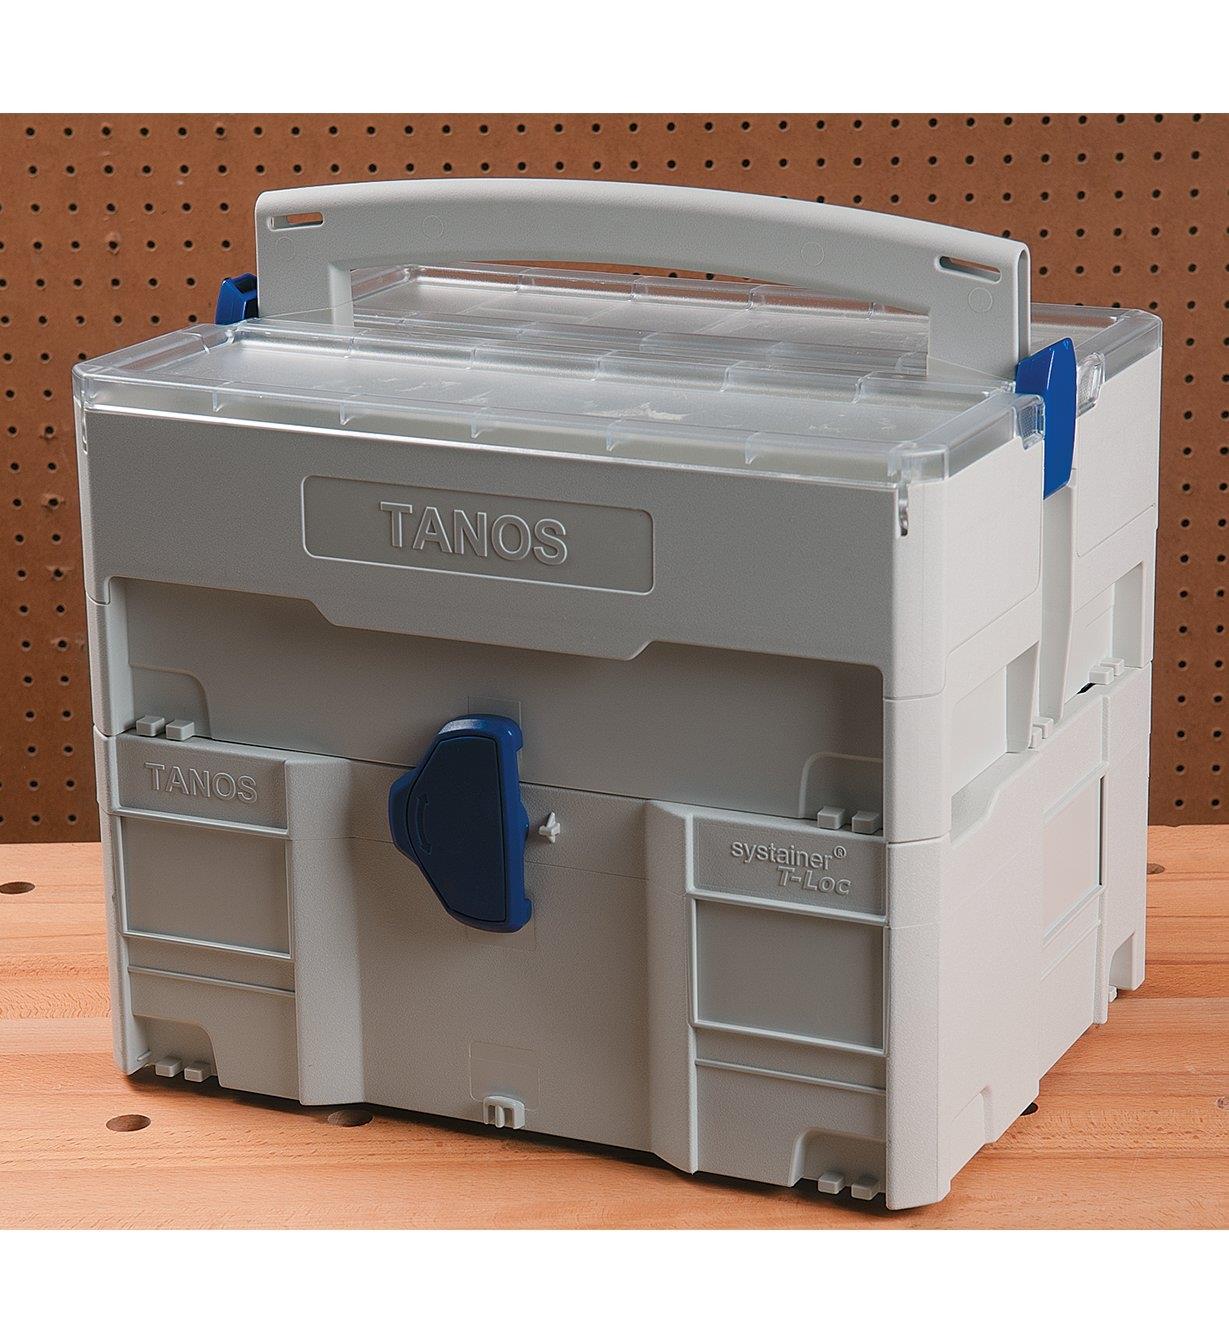 68K4515 - Systainer Storage Box